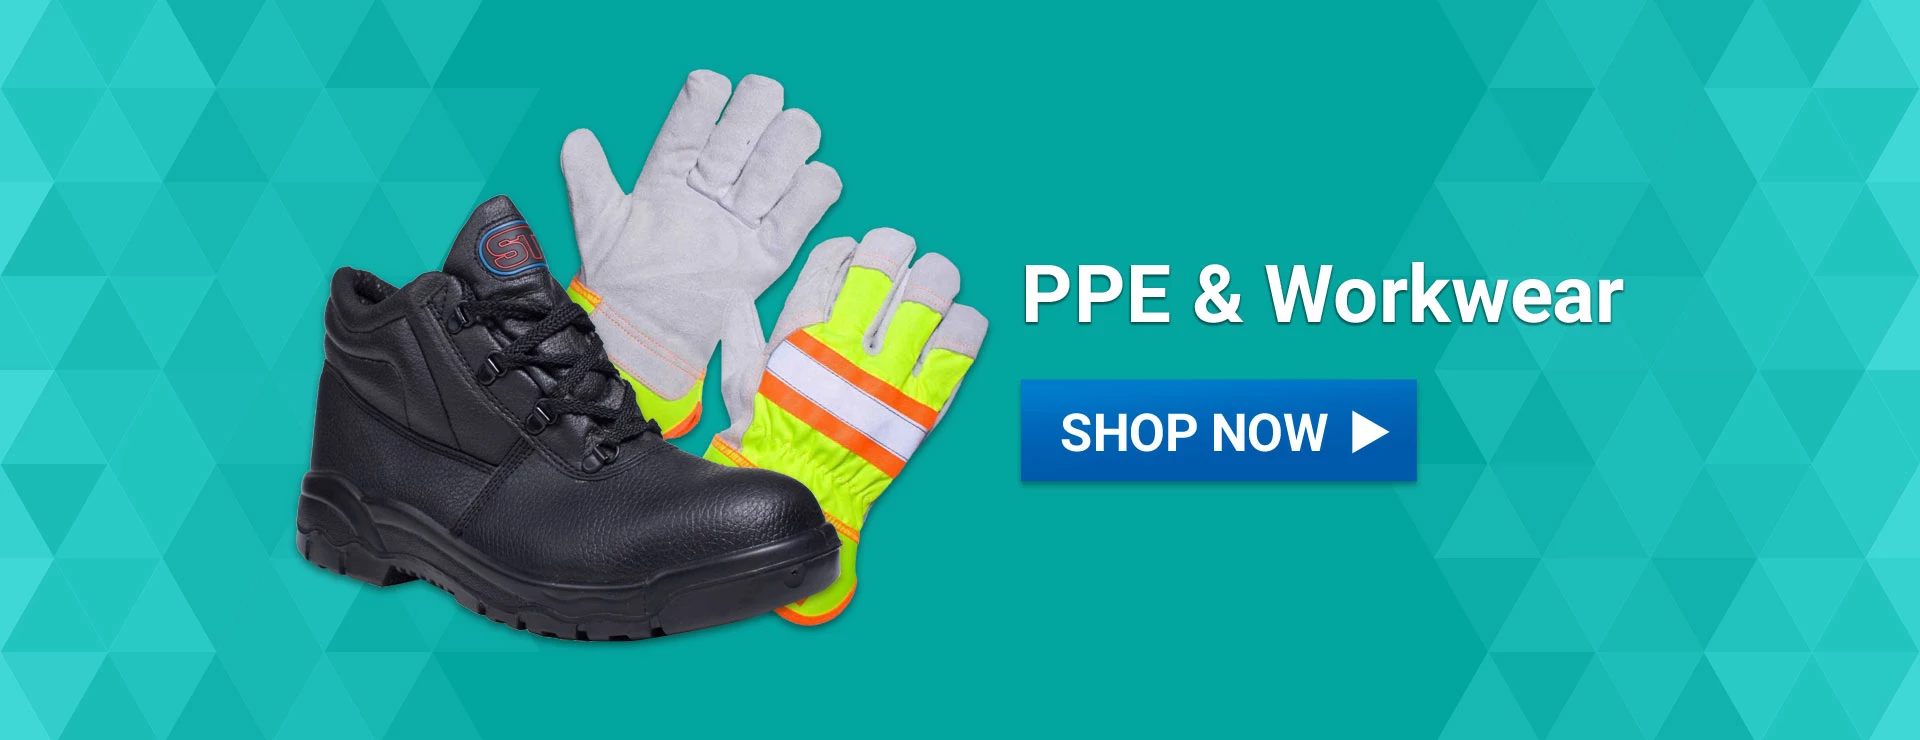 Alliance UK PPE & Workwear